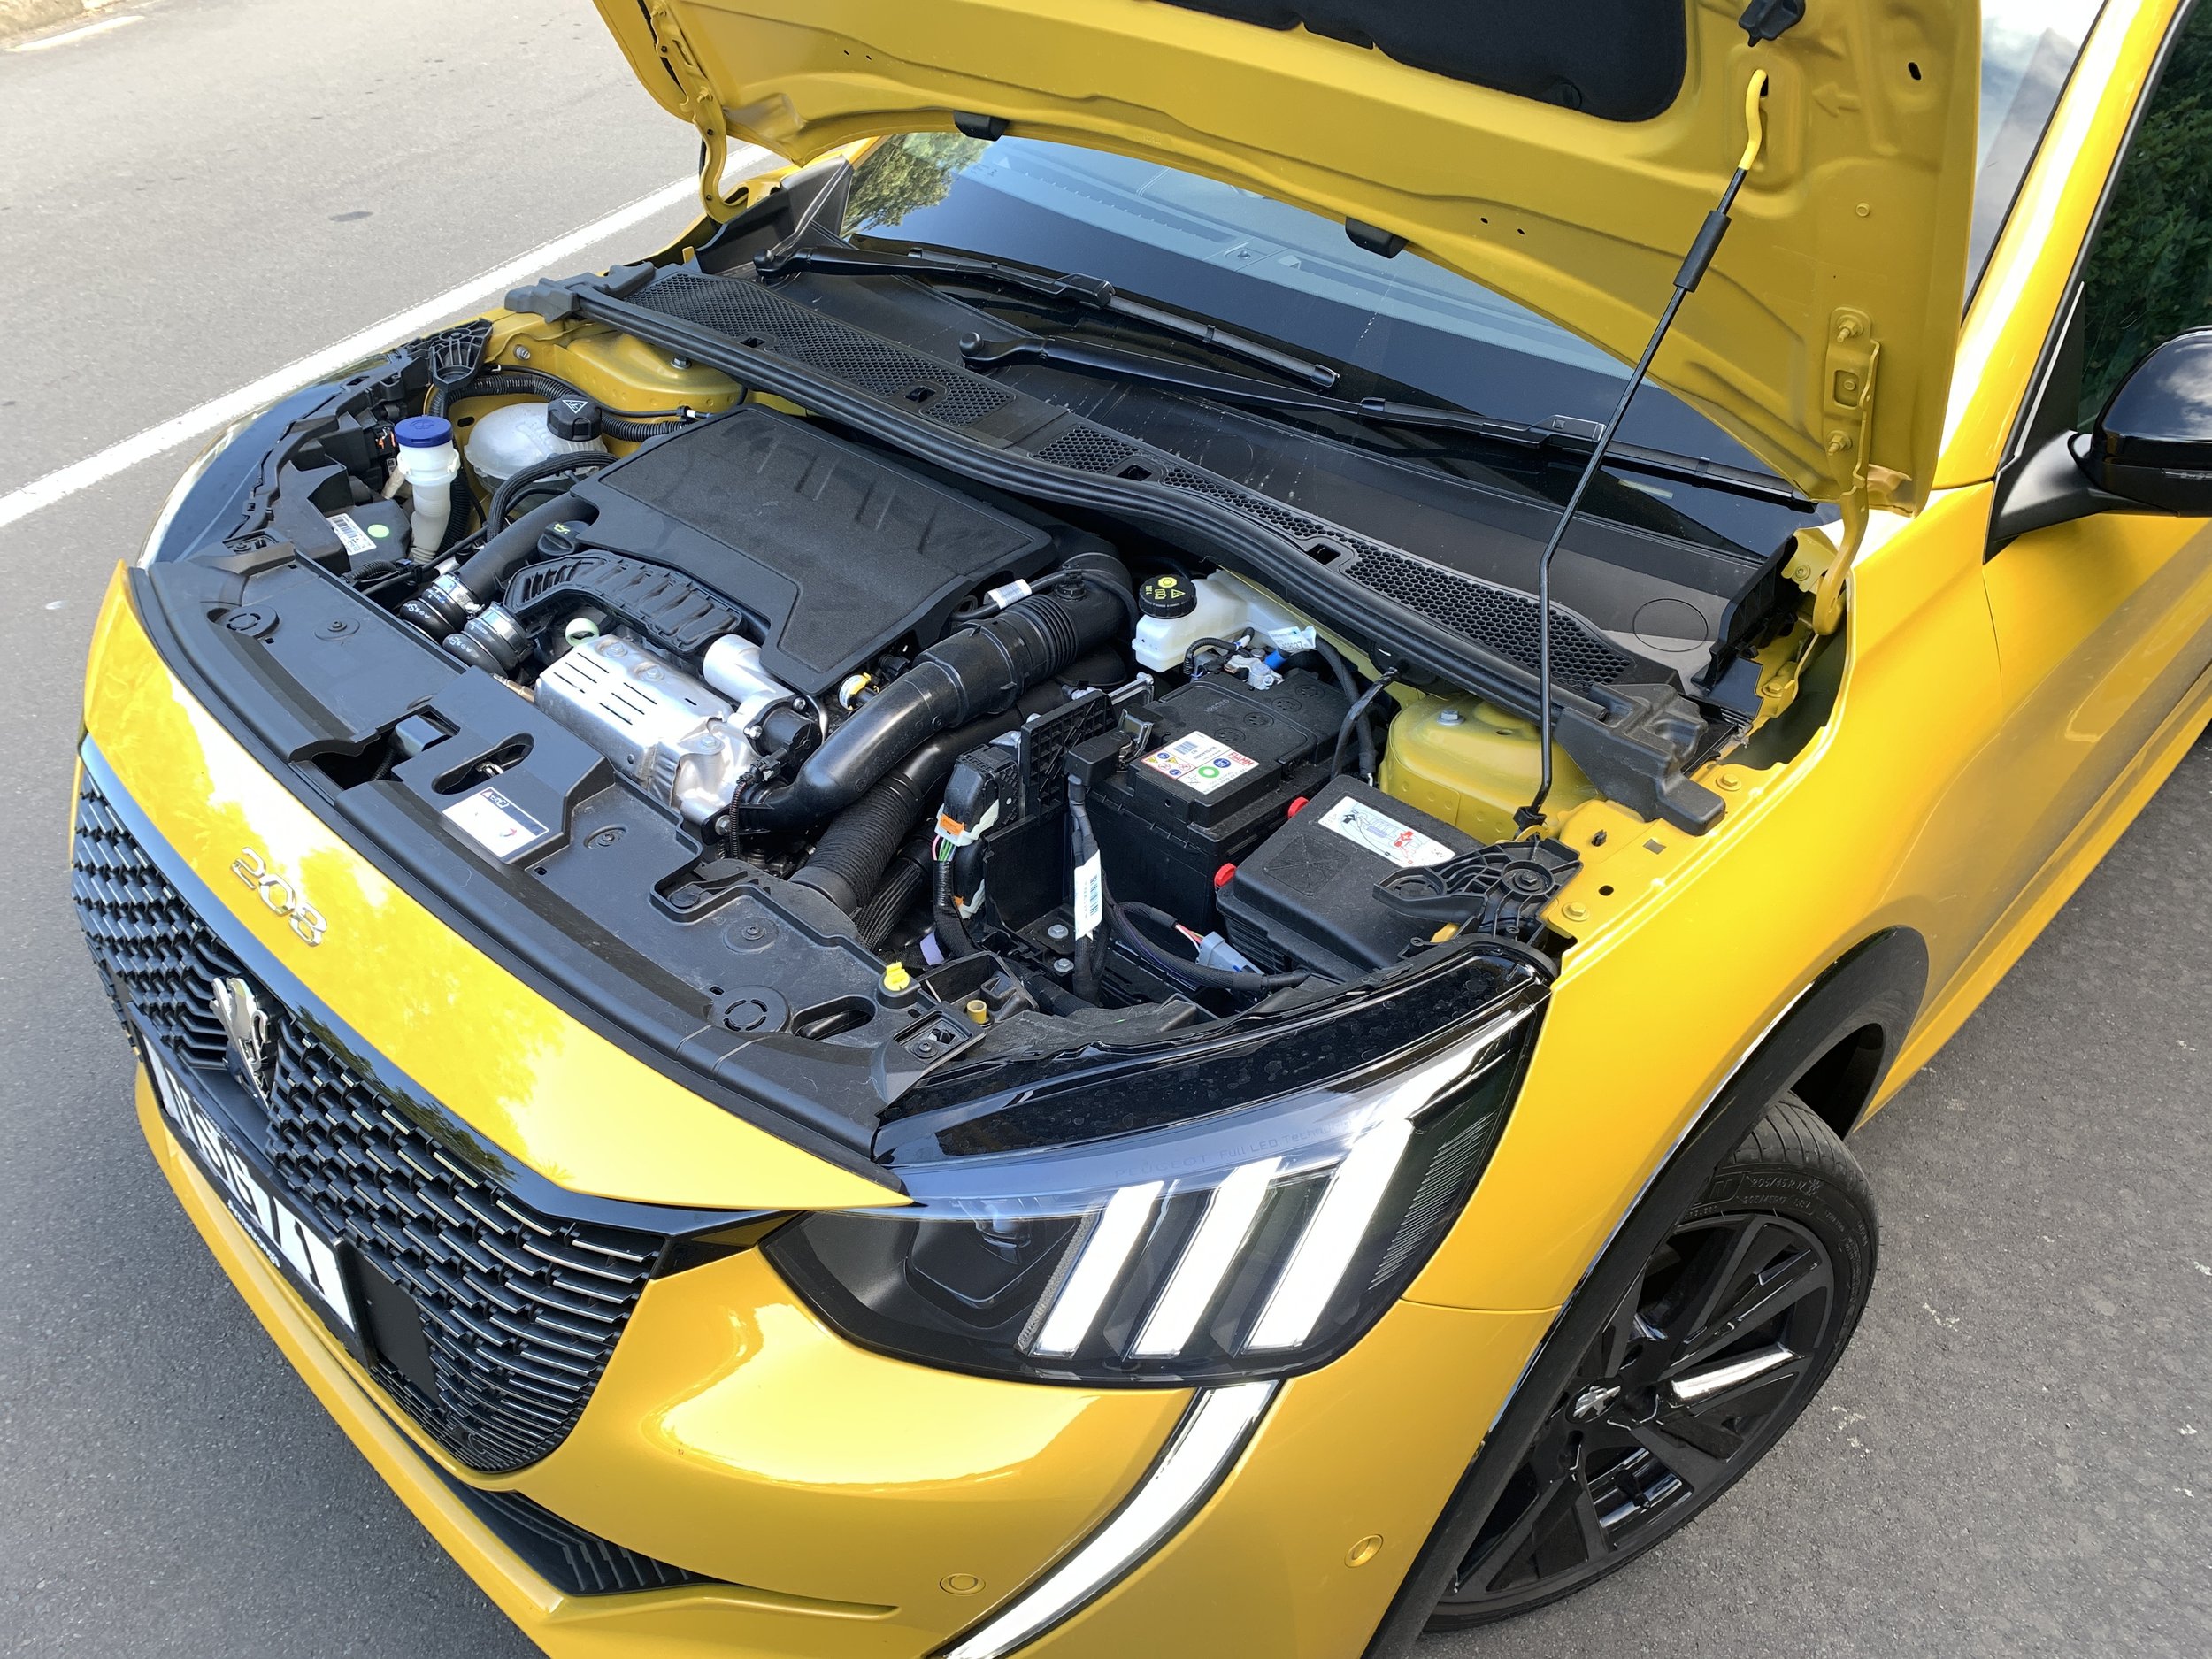 Peugeot 208 GT roadtest review: Pump action player — Motoringnz